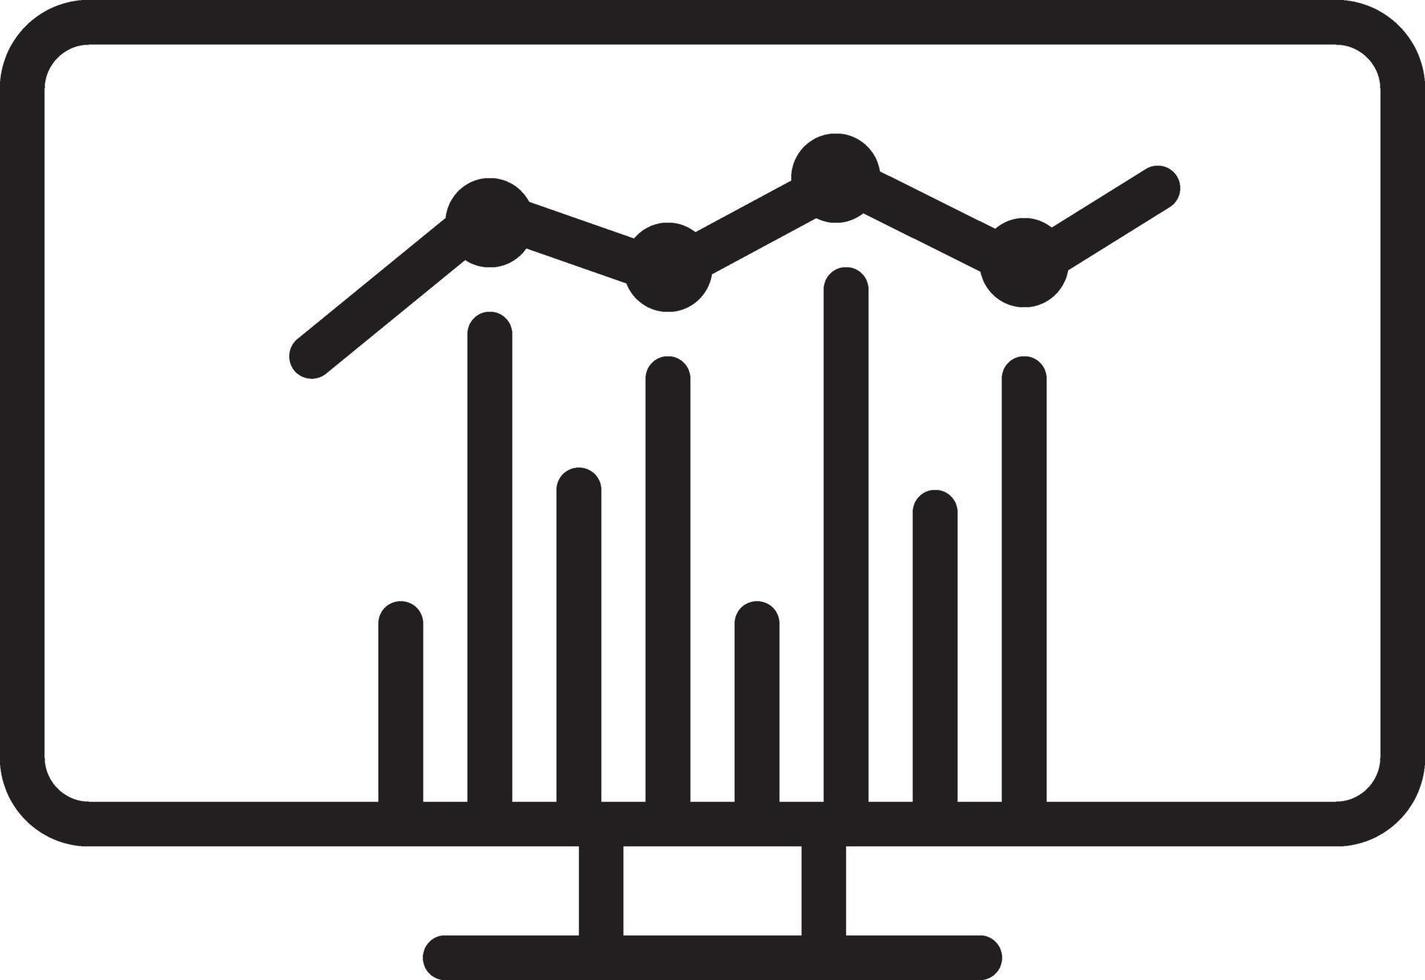 icône de ligne pour les statistiques vecteur